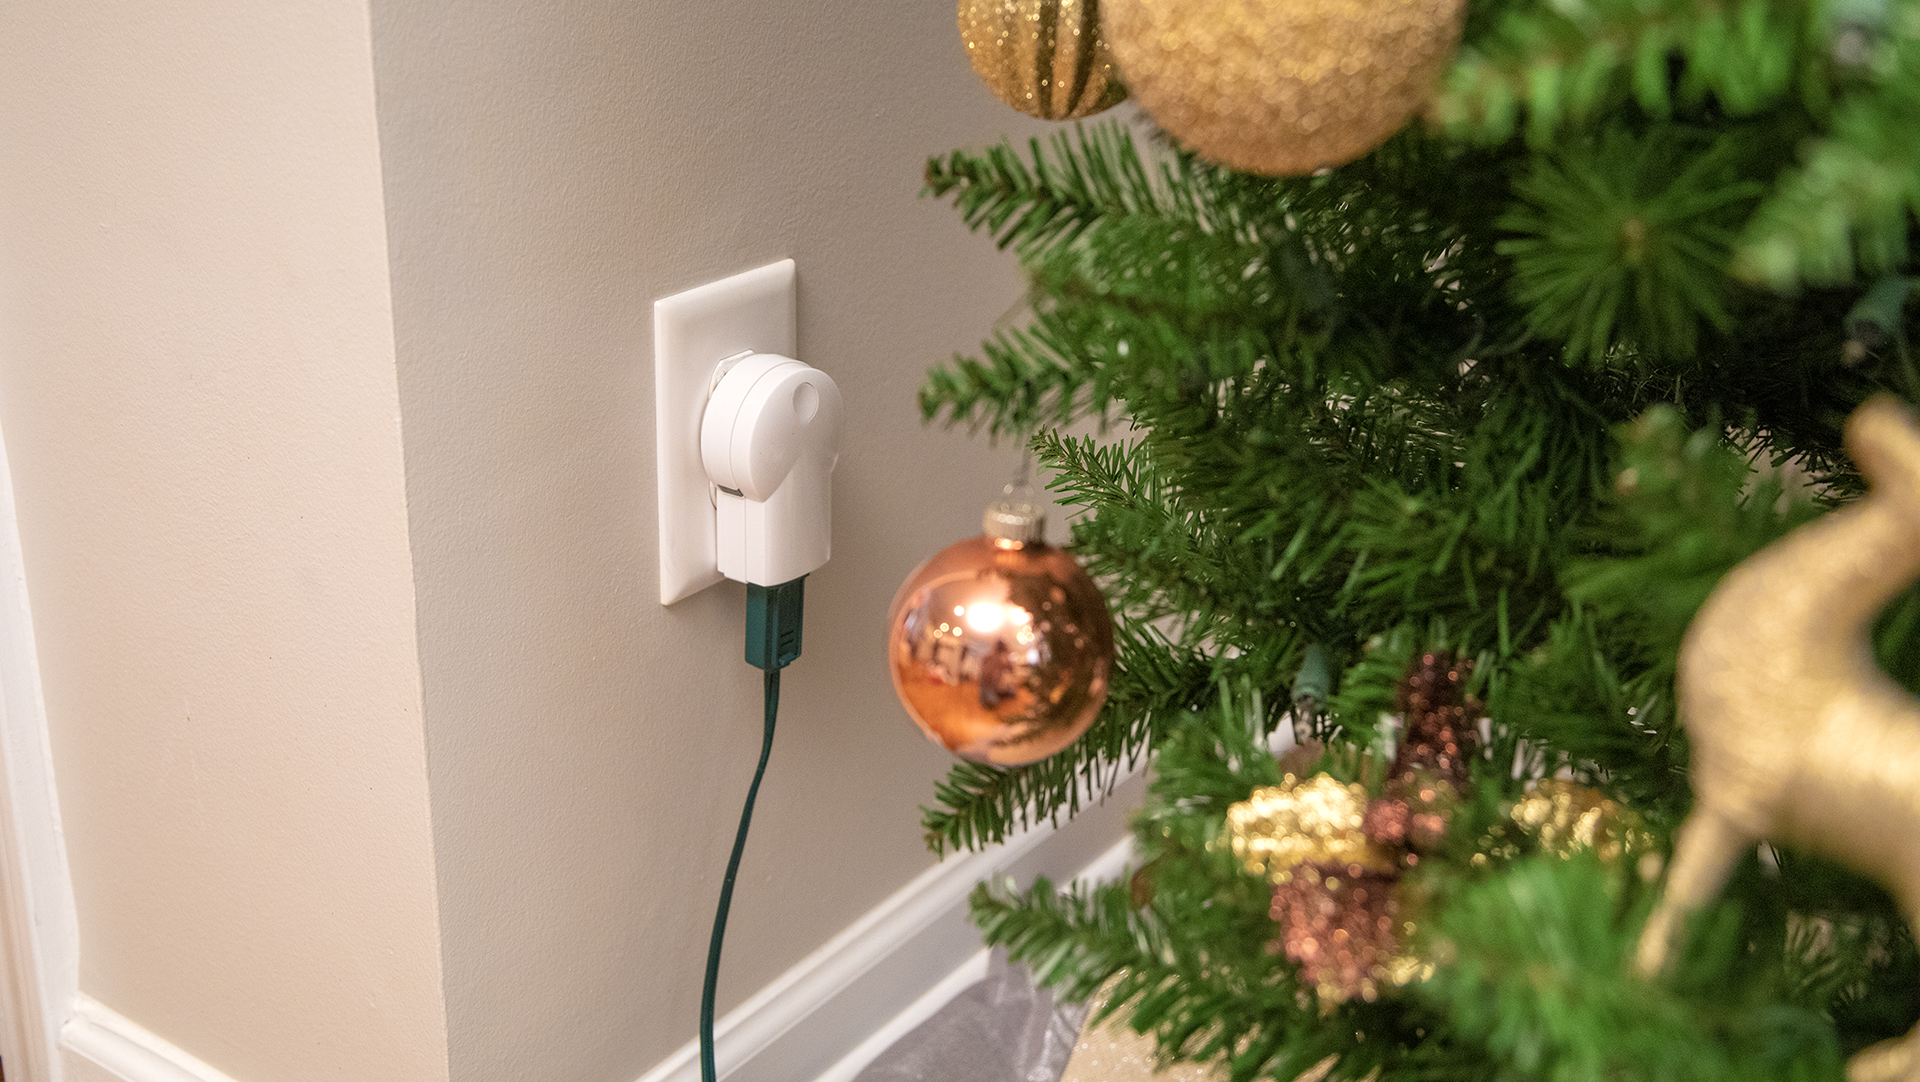 Christmas Tree plugged into CPI Smart Plug